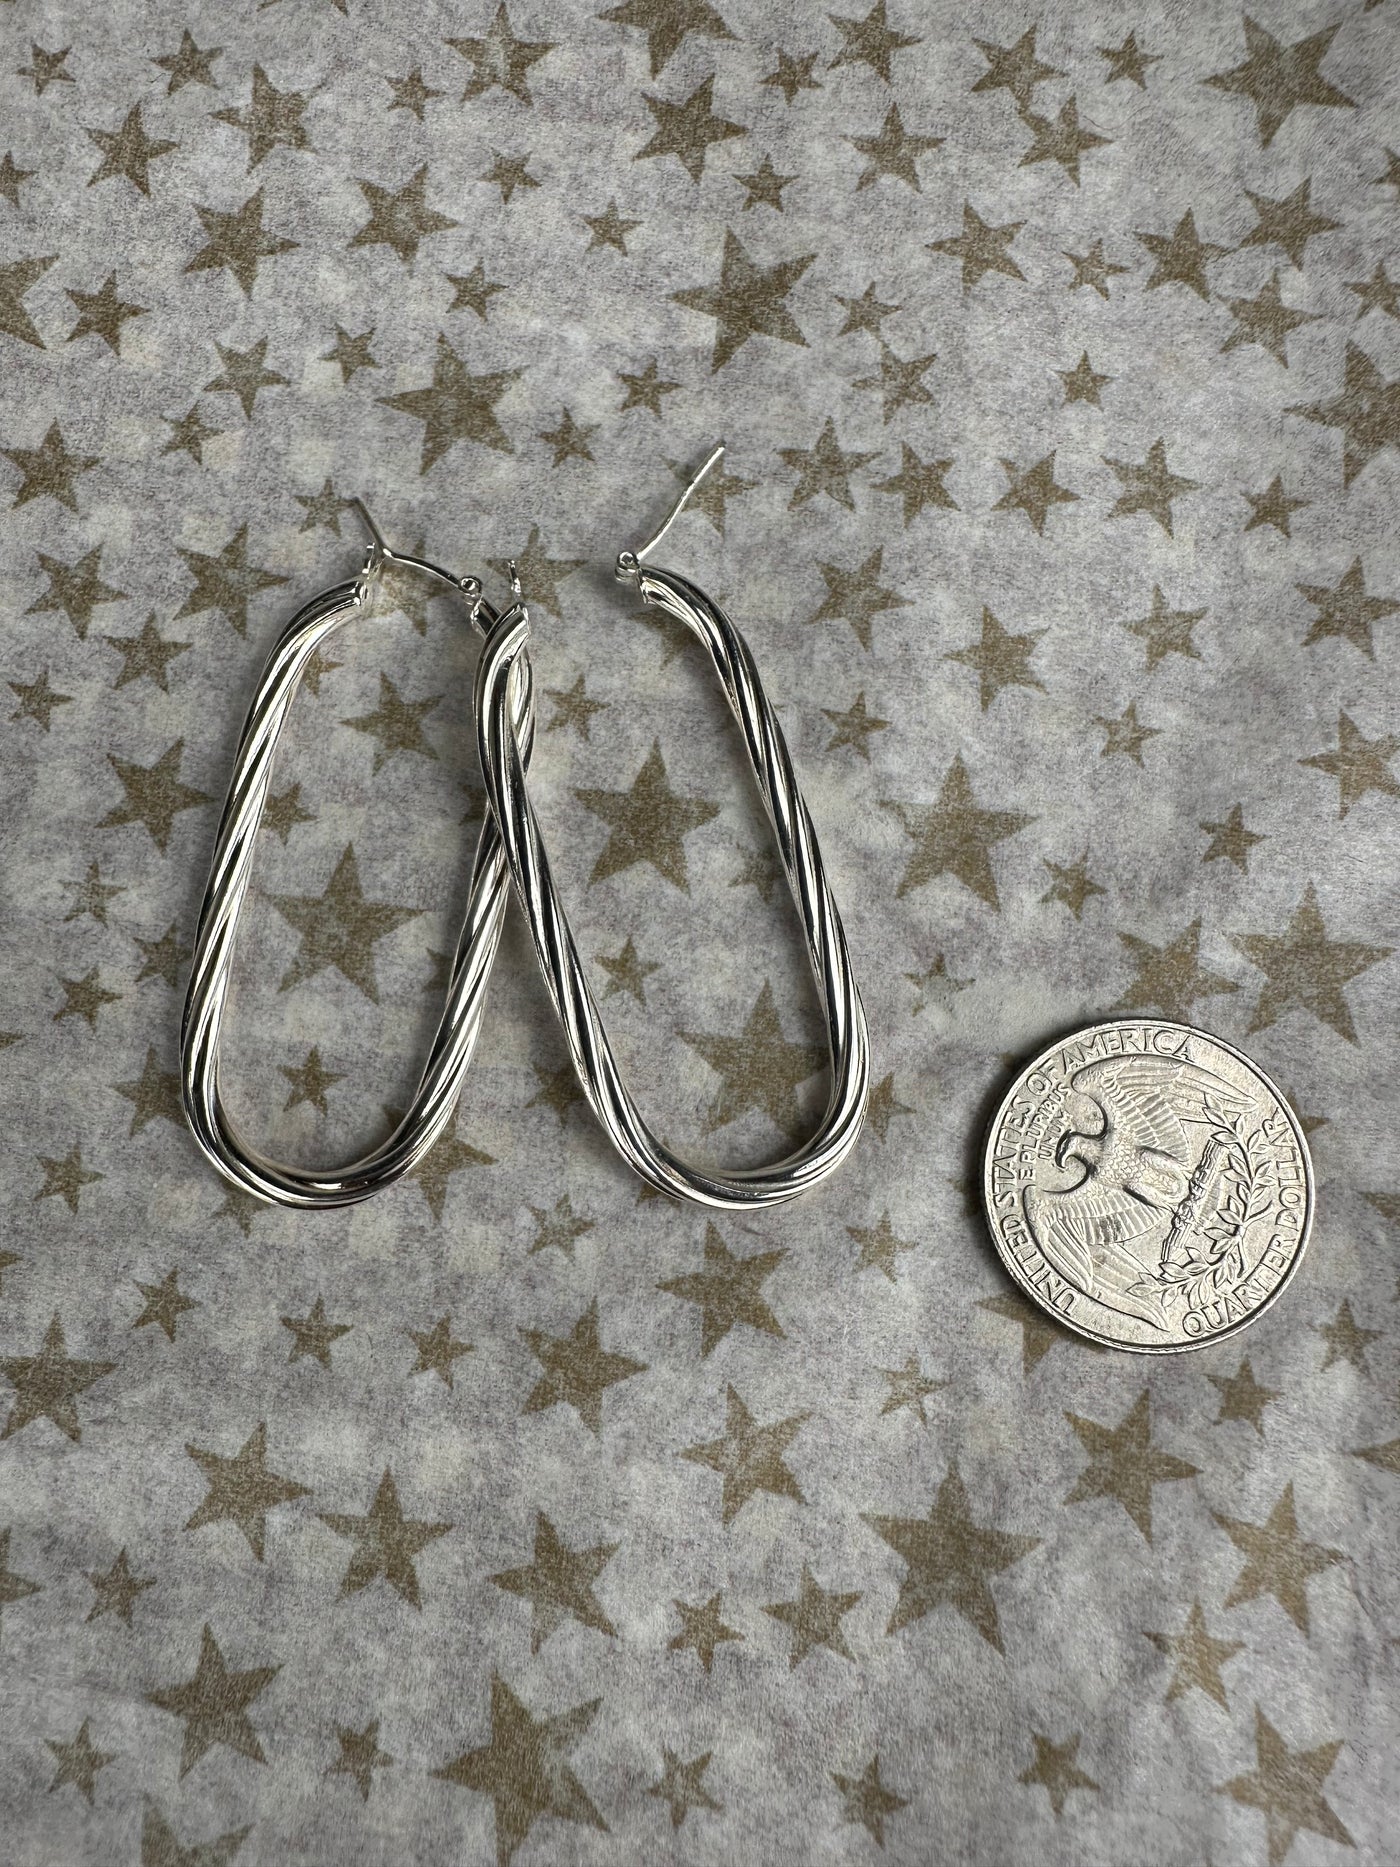 Sterling Silver Rectangular Twist Hoop Earrings